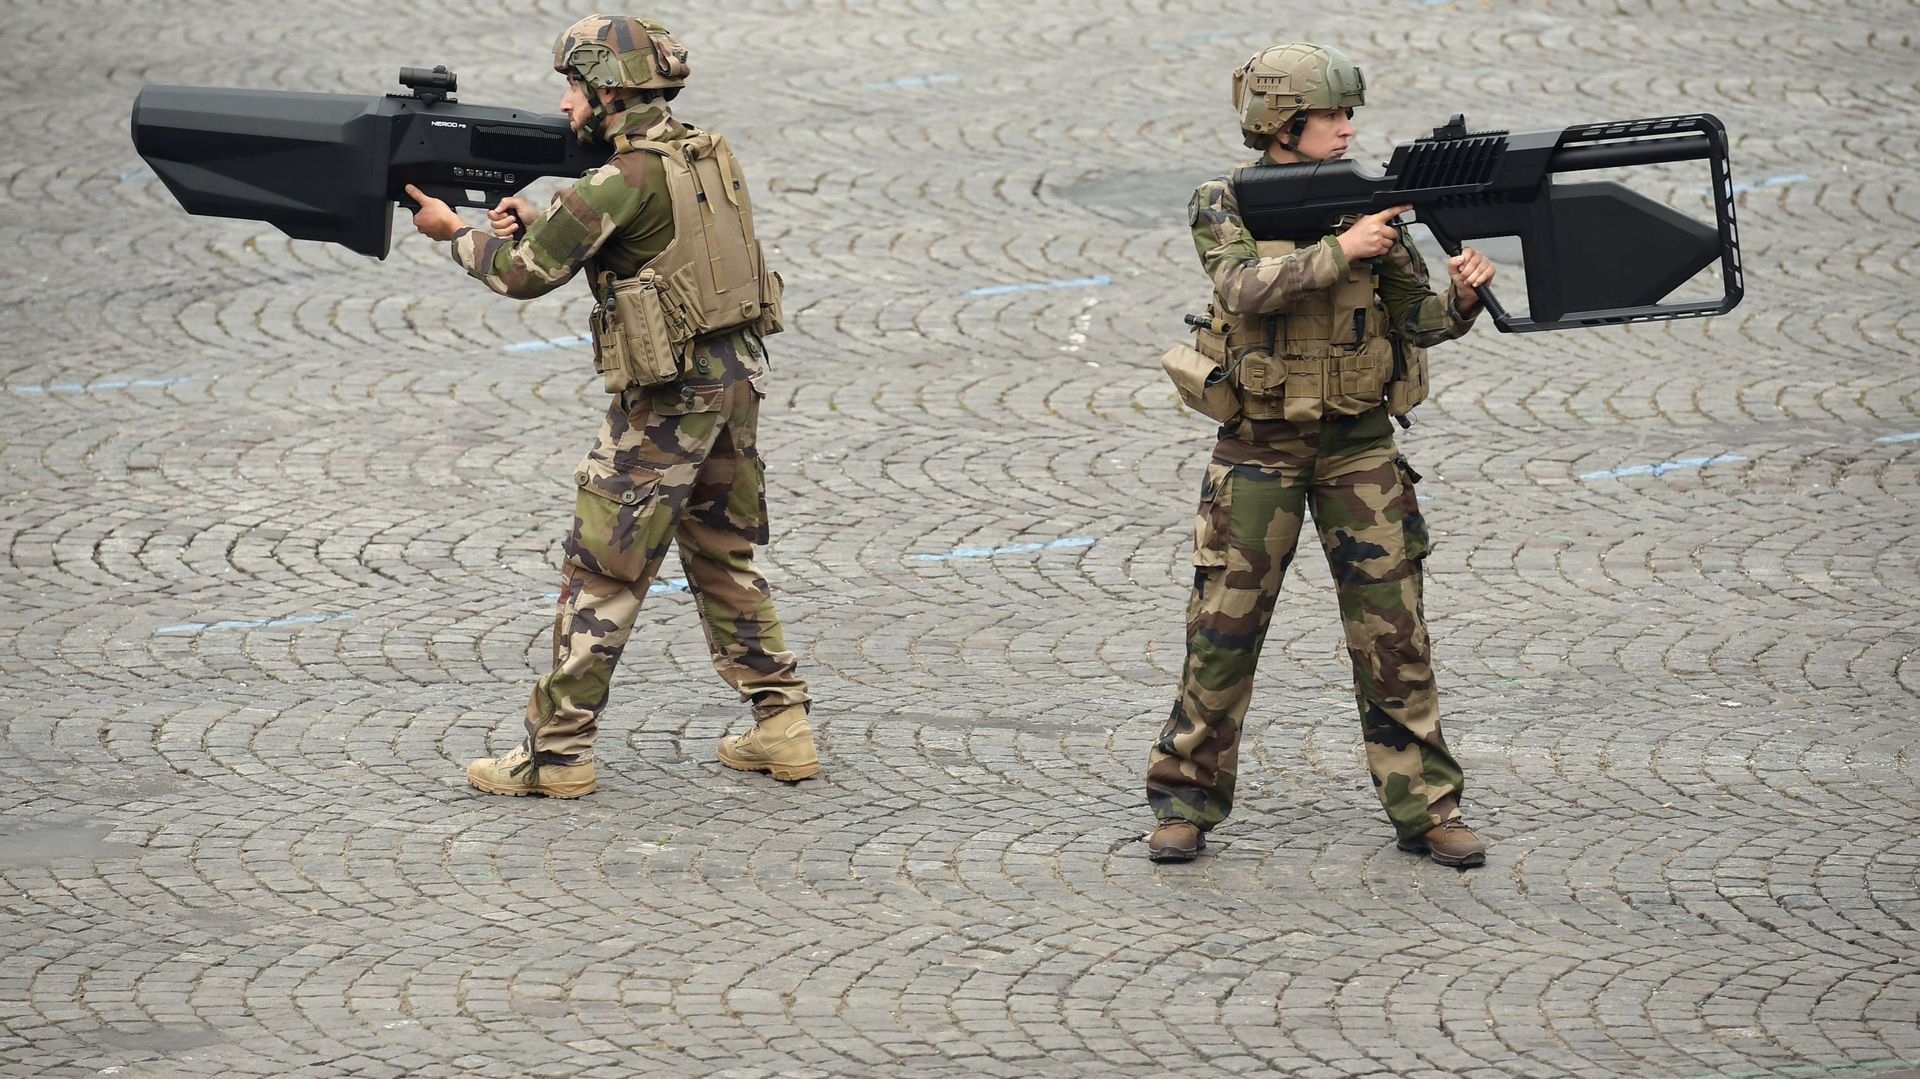 Mais que sont ces imposantes armes tenues par des militaires lors du défilé du 14 juillet?